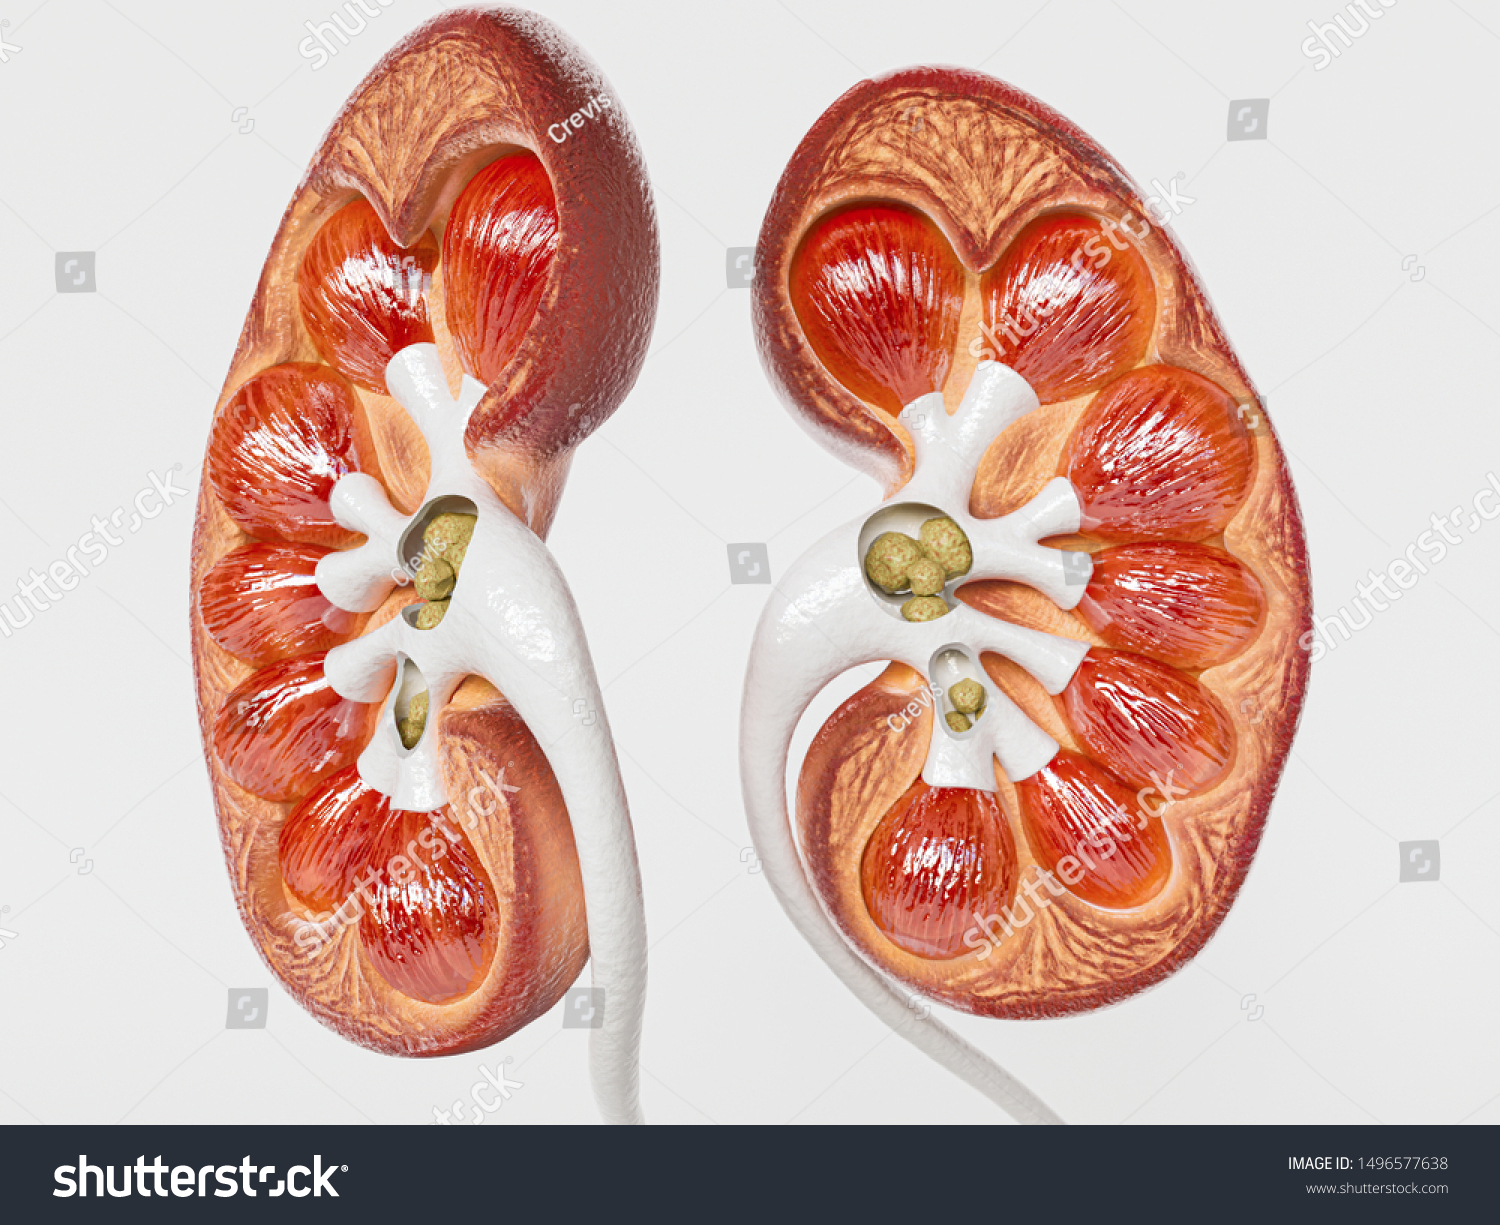 Kidney Stones Cross Section Kidney 3d Stock Illustration 1496577638 ...